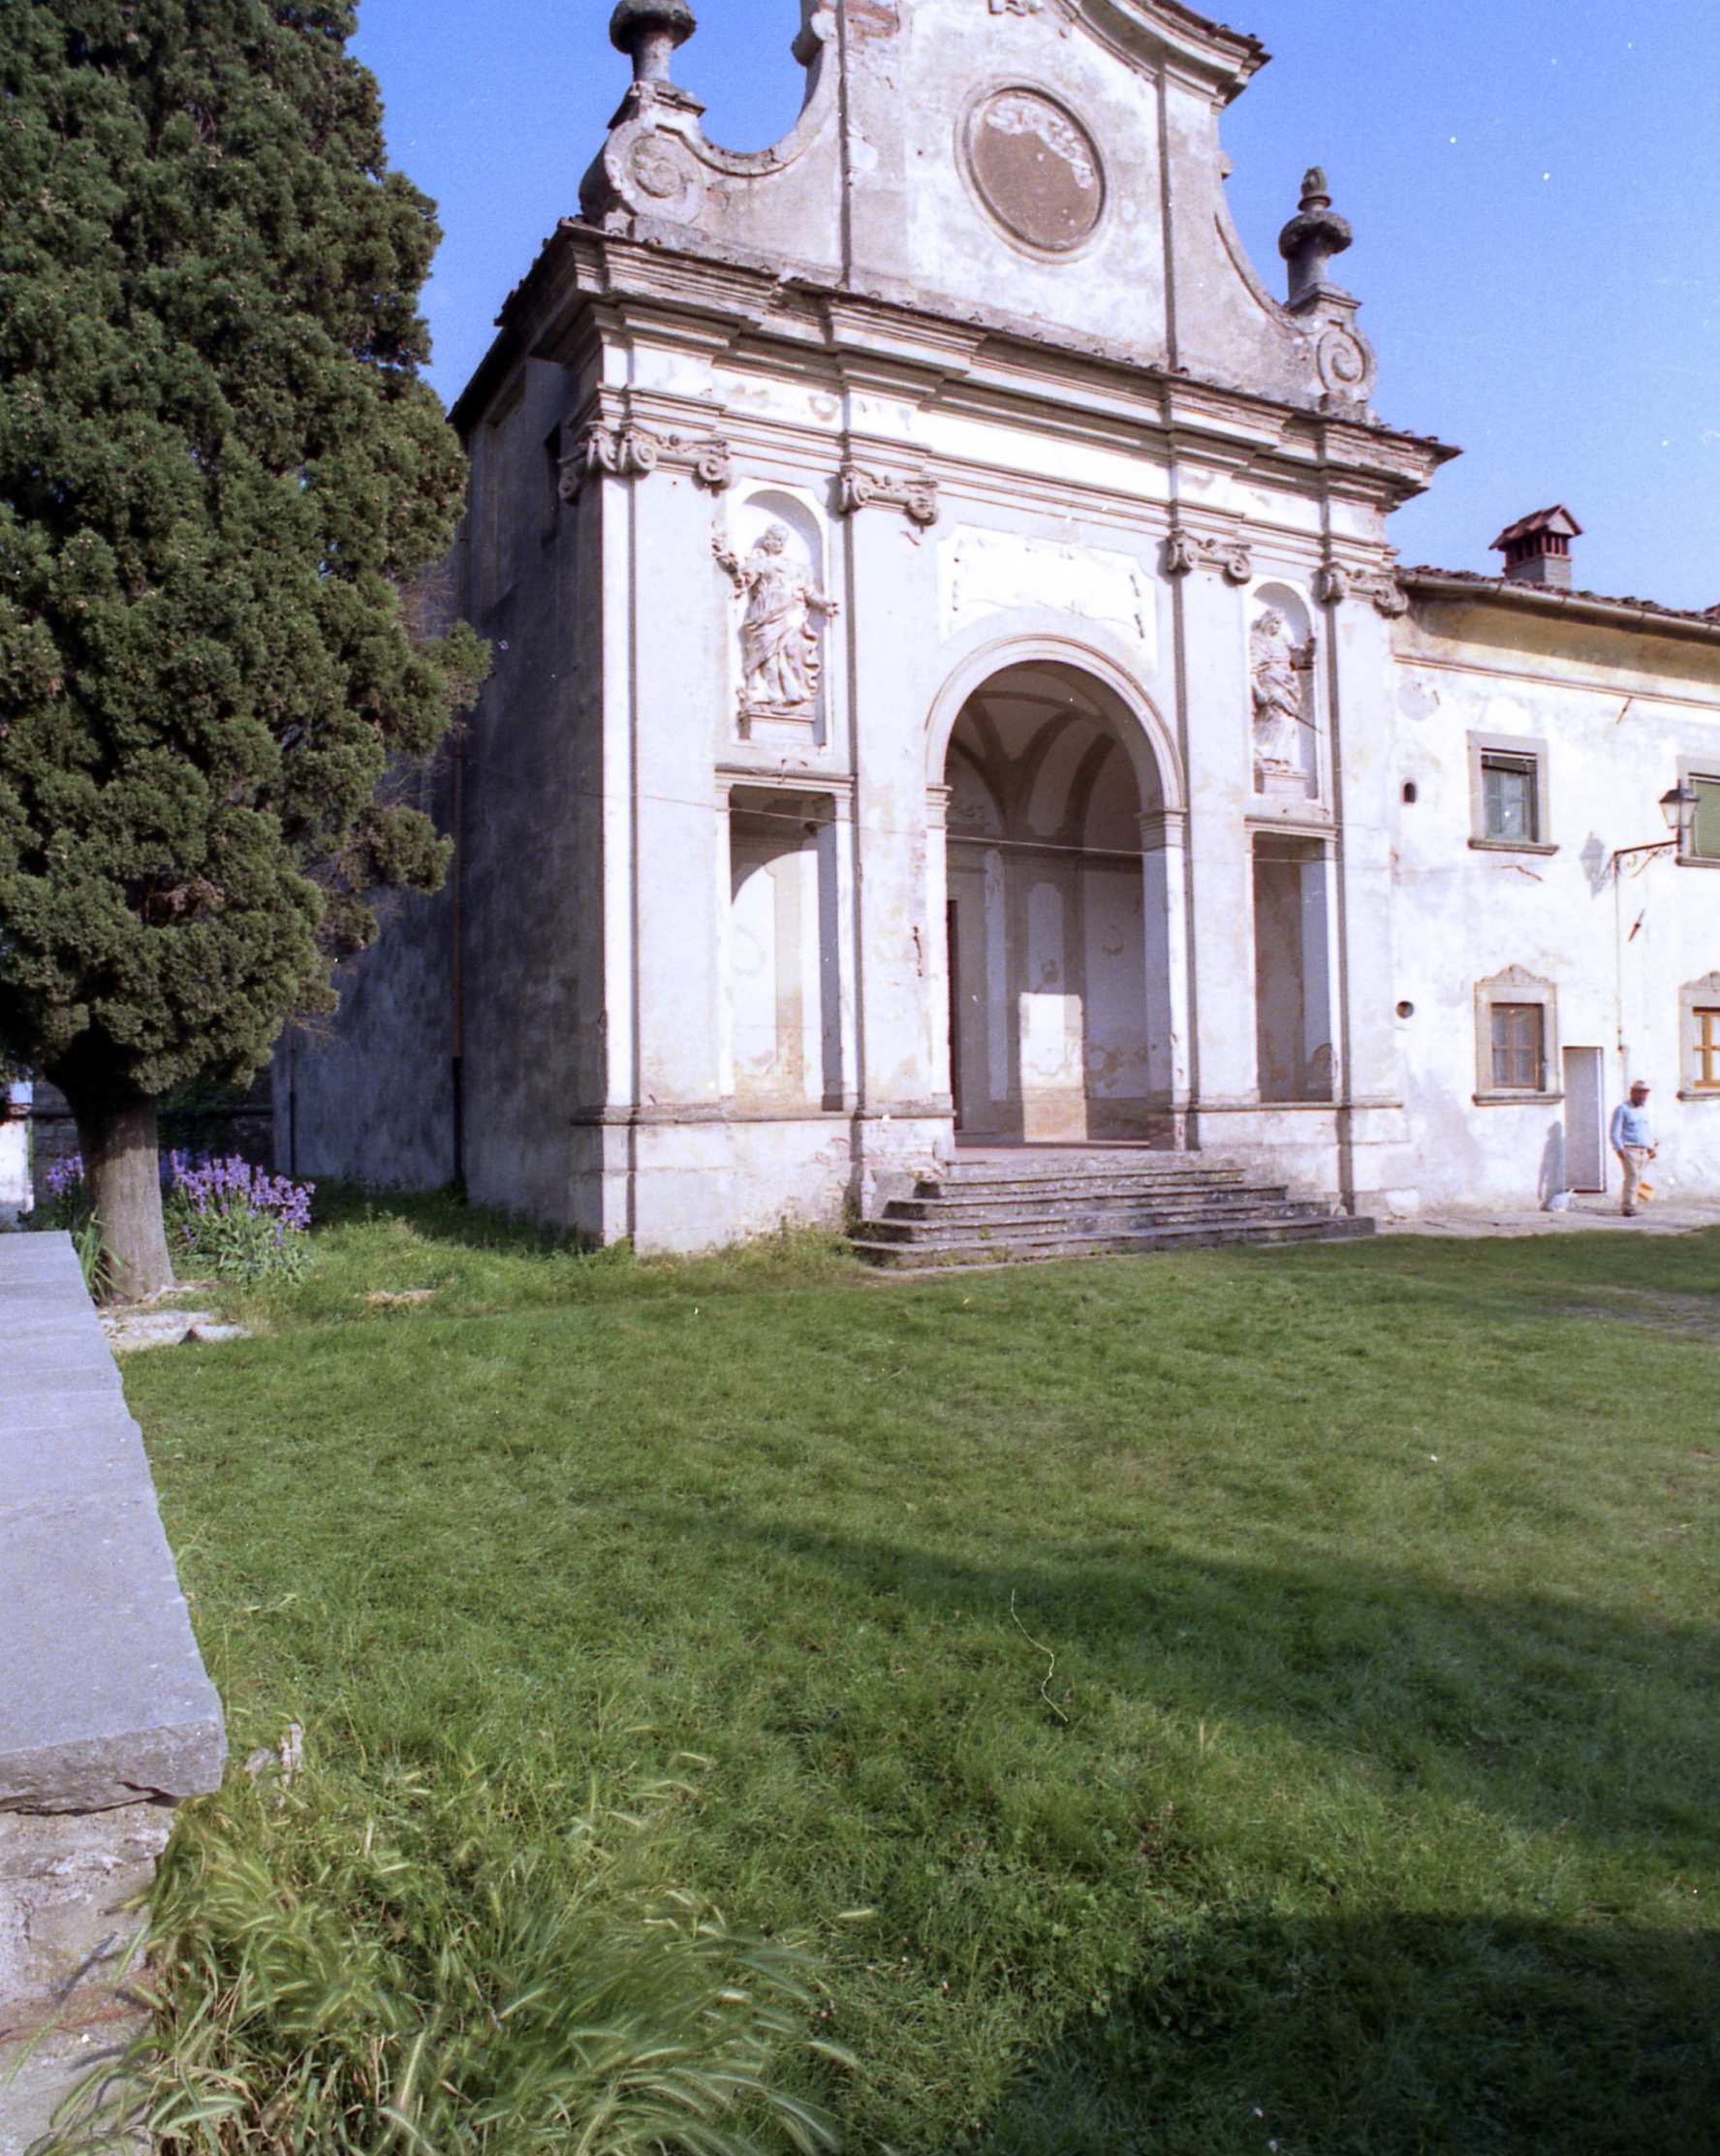 Abbey of Santa Maria a Vigesimo in Barberino di Mugello